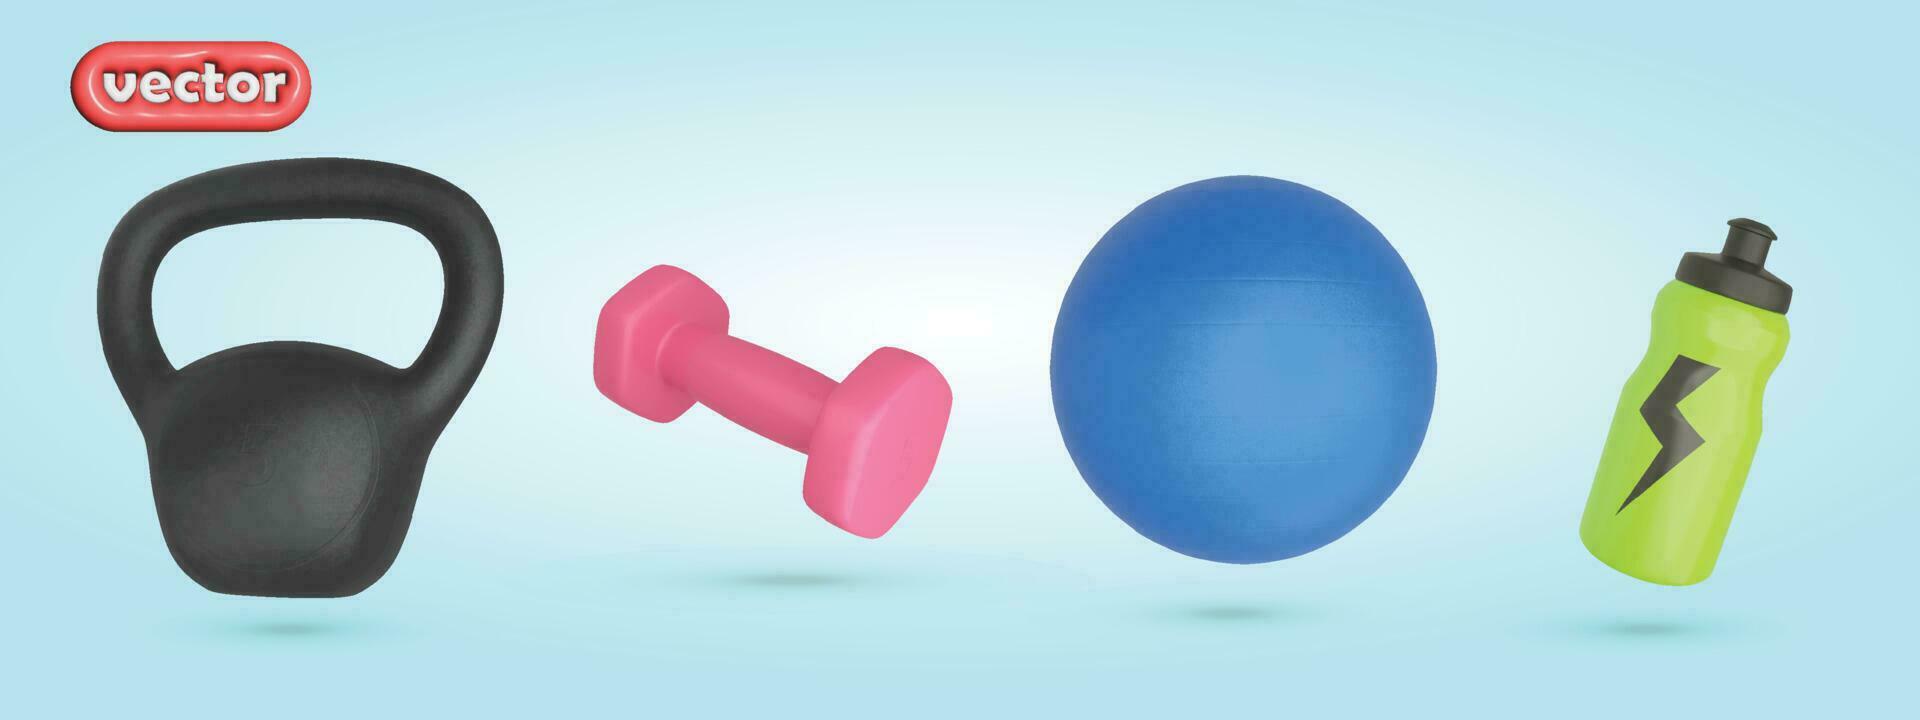 Sportschool gereedschap 3d vector reeks voor oefening, kettlebell, barbell, gymbal en watter fles